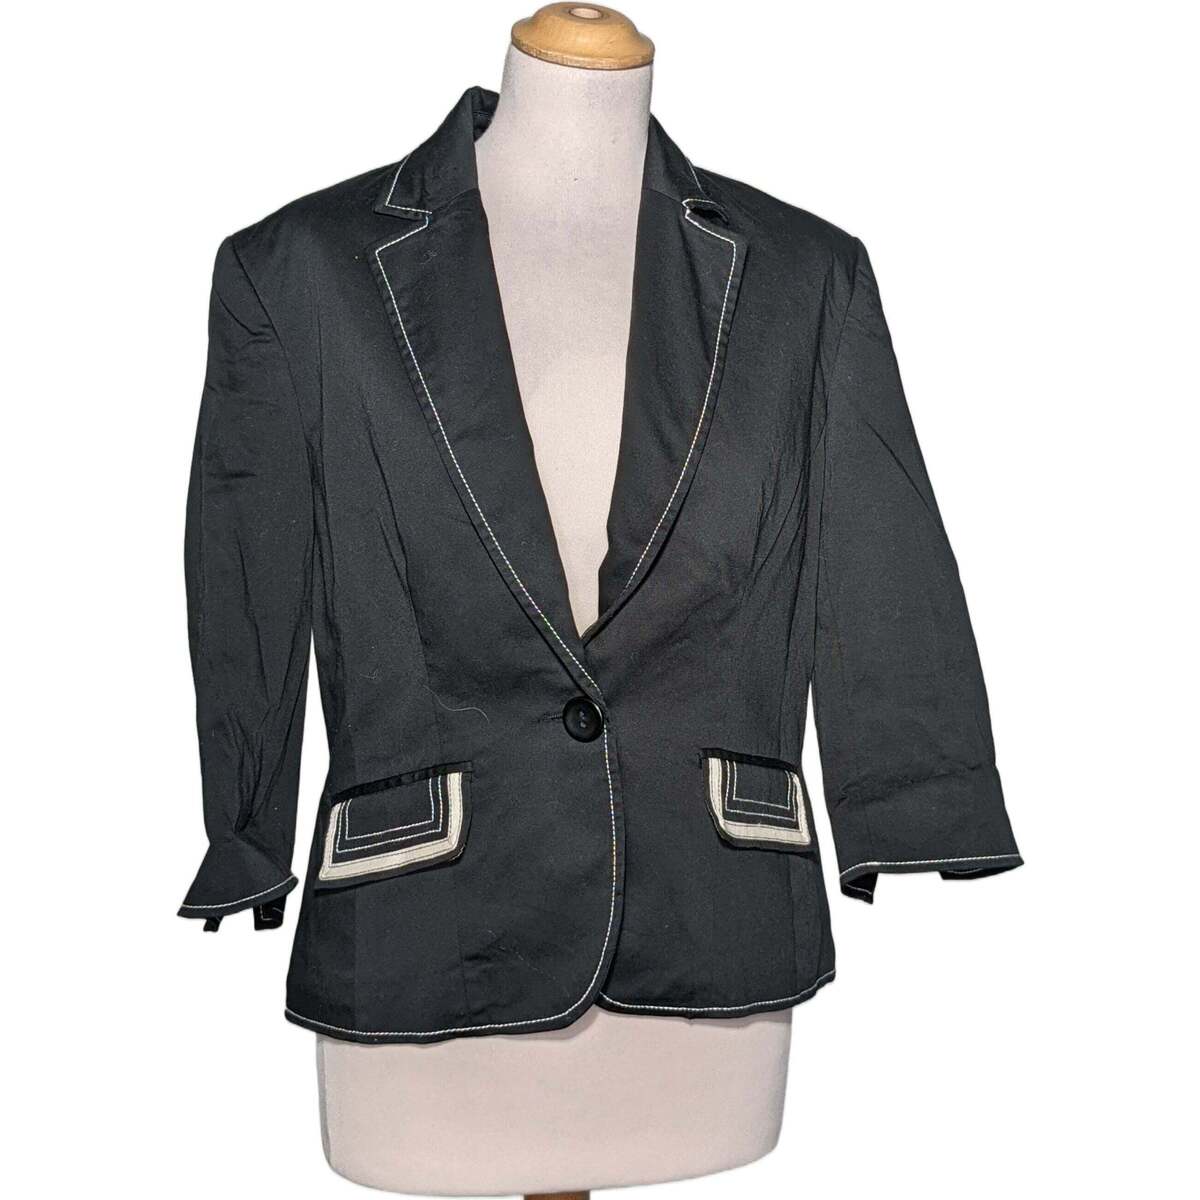 Vêtements Femme Vestes / Blazers Caroll blazer  42 - T4 - L/XL Noir Noir